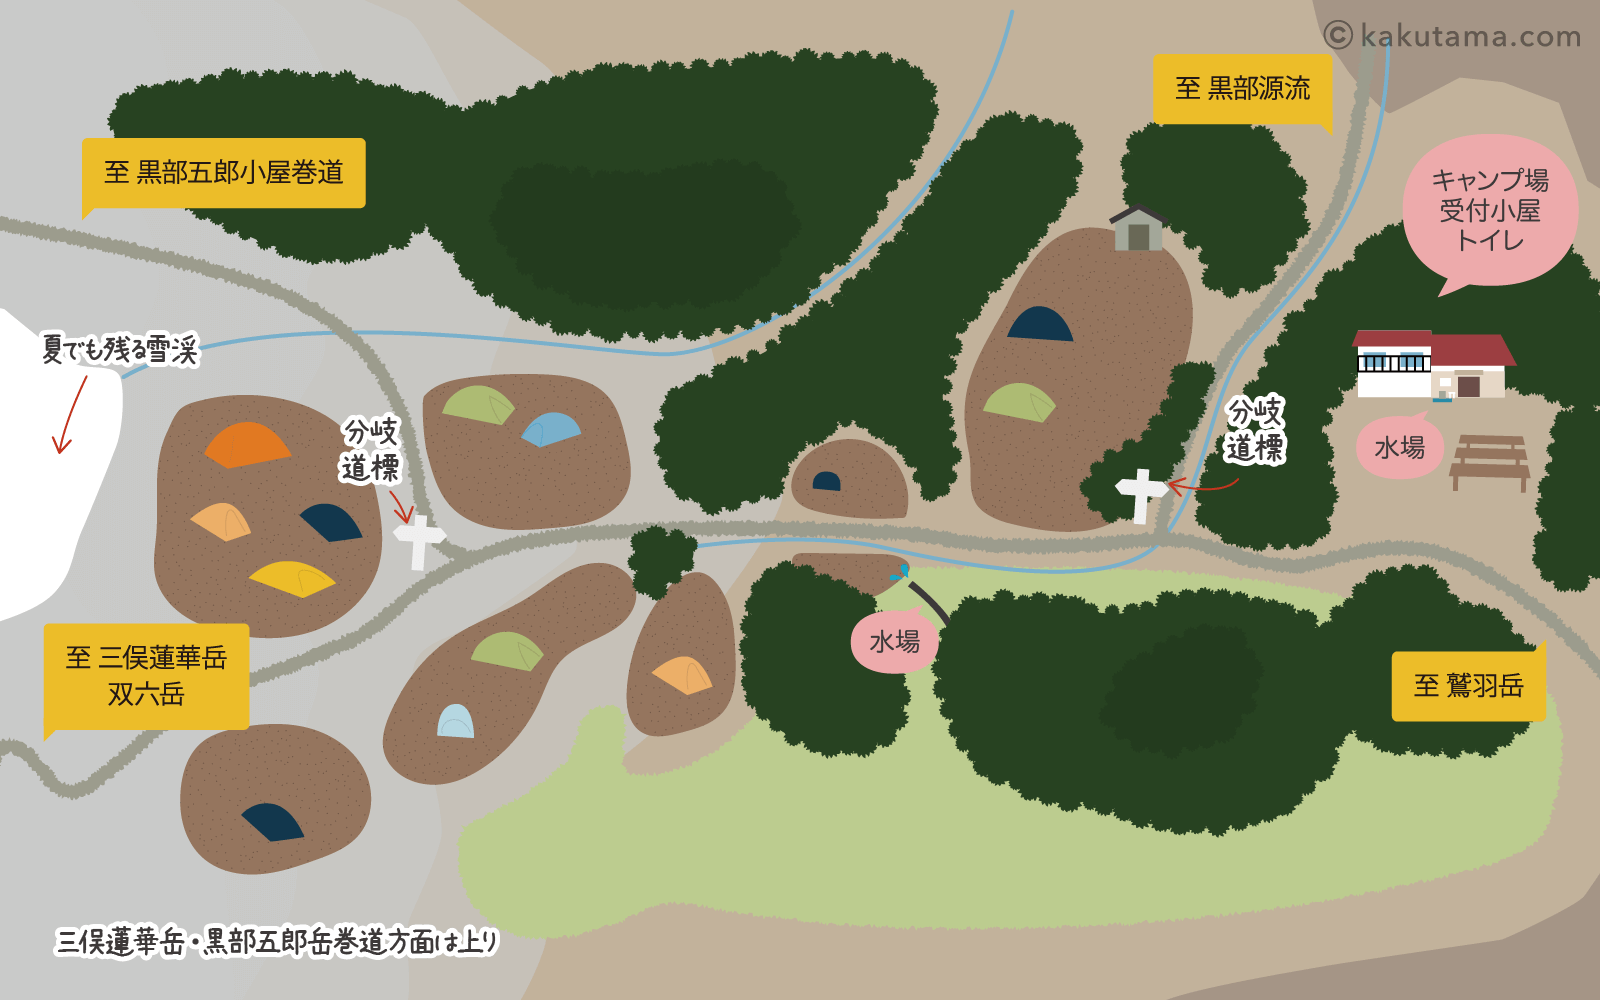 三俣山荘テント場のイラストマップ